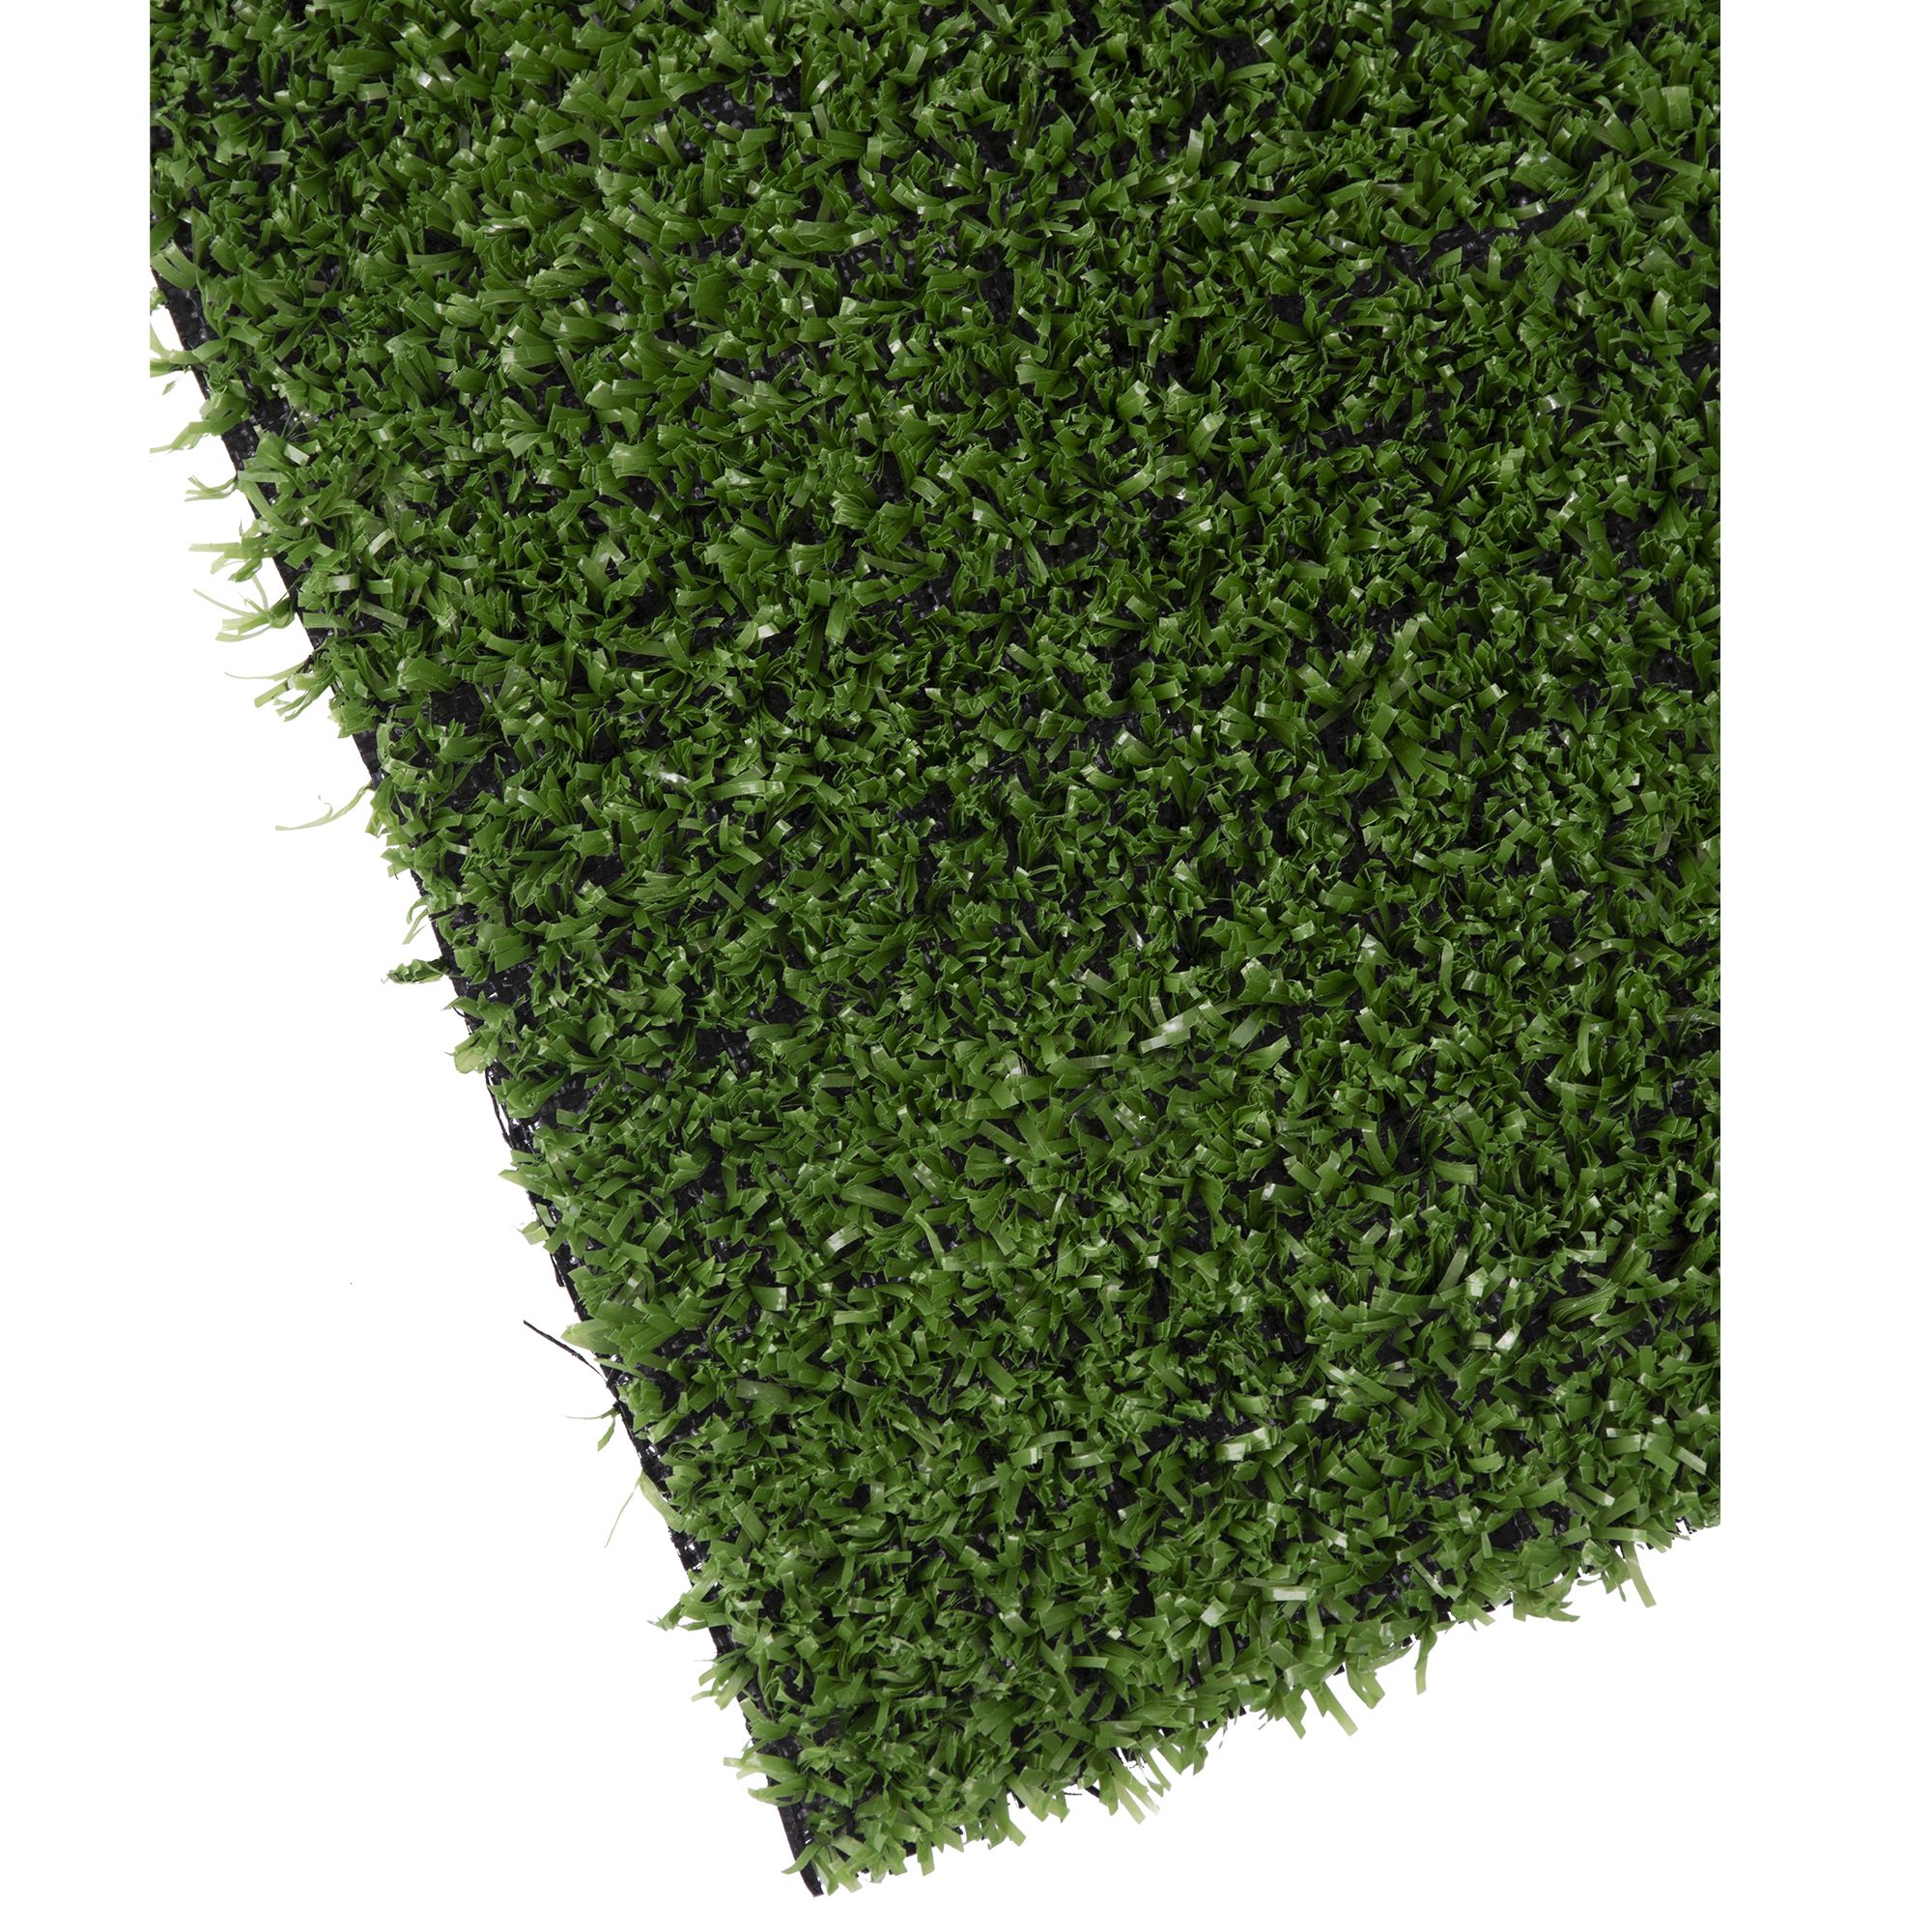 Umělý trávník, 7mm, 200cm x 5m, zelený, STREND PRO 8.400000 Kg GIGA Sklad20 2171513 4